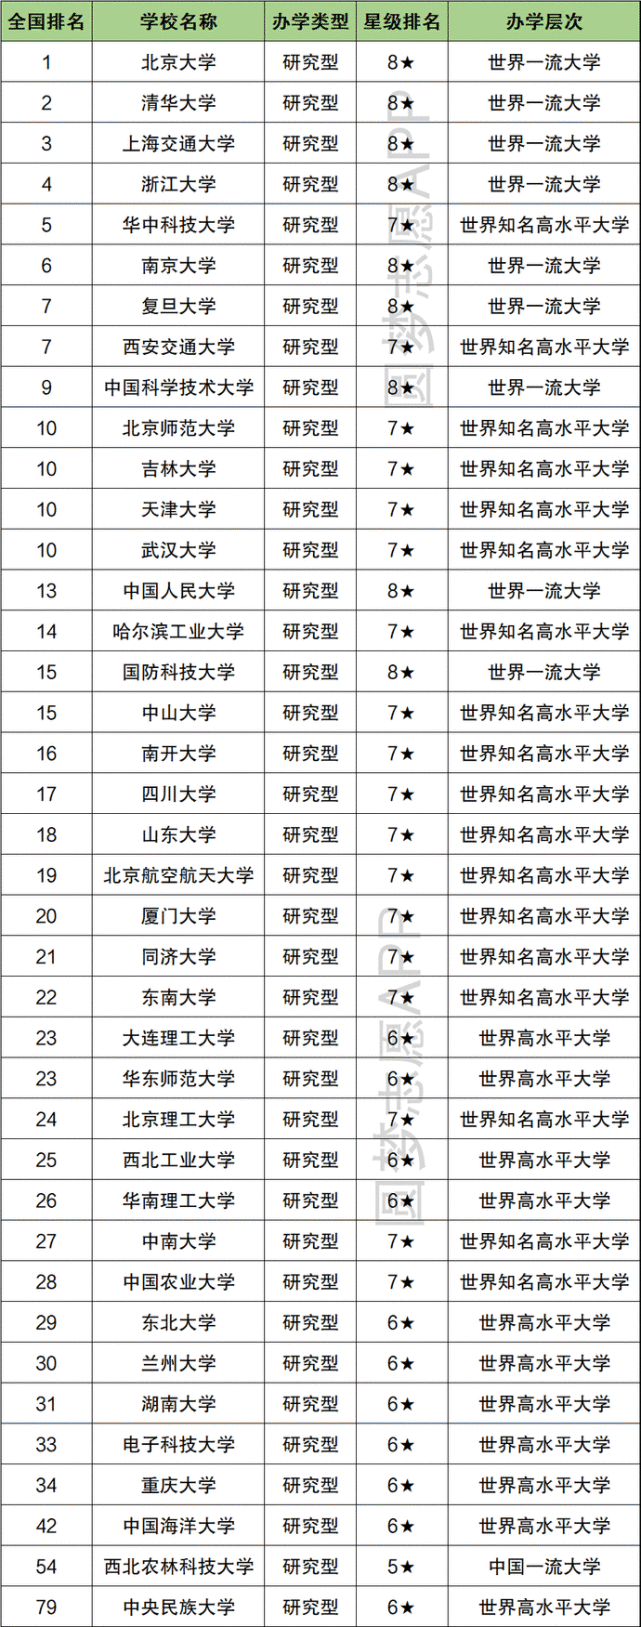 根据校友会2021中国985工程大学排名,2021全国985学校排名顺序详见下